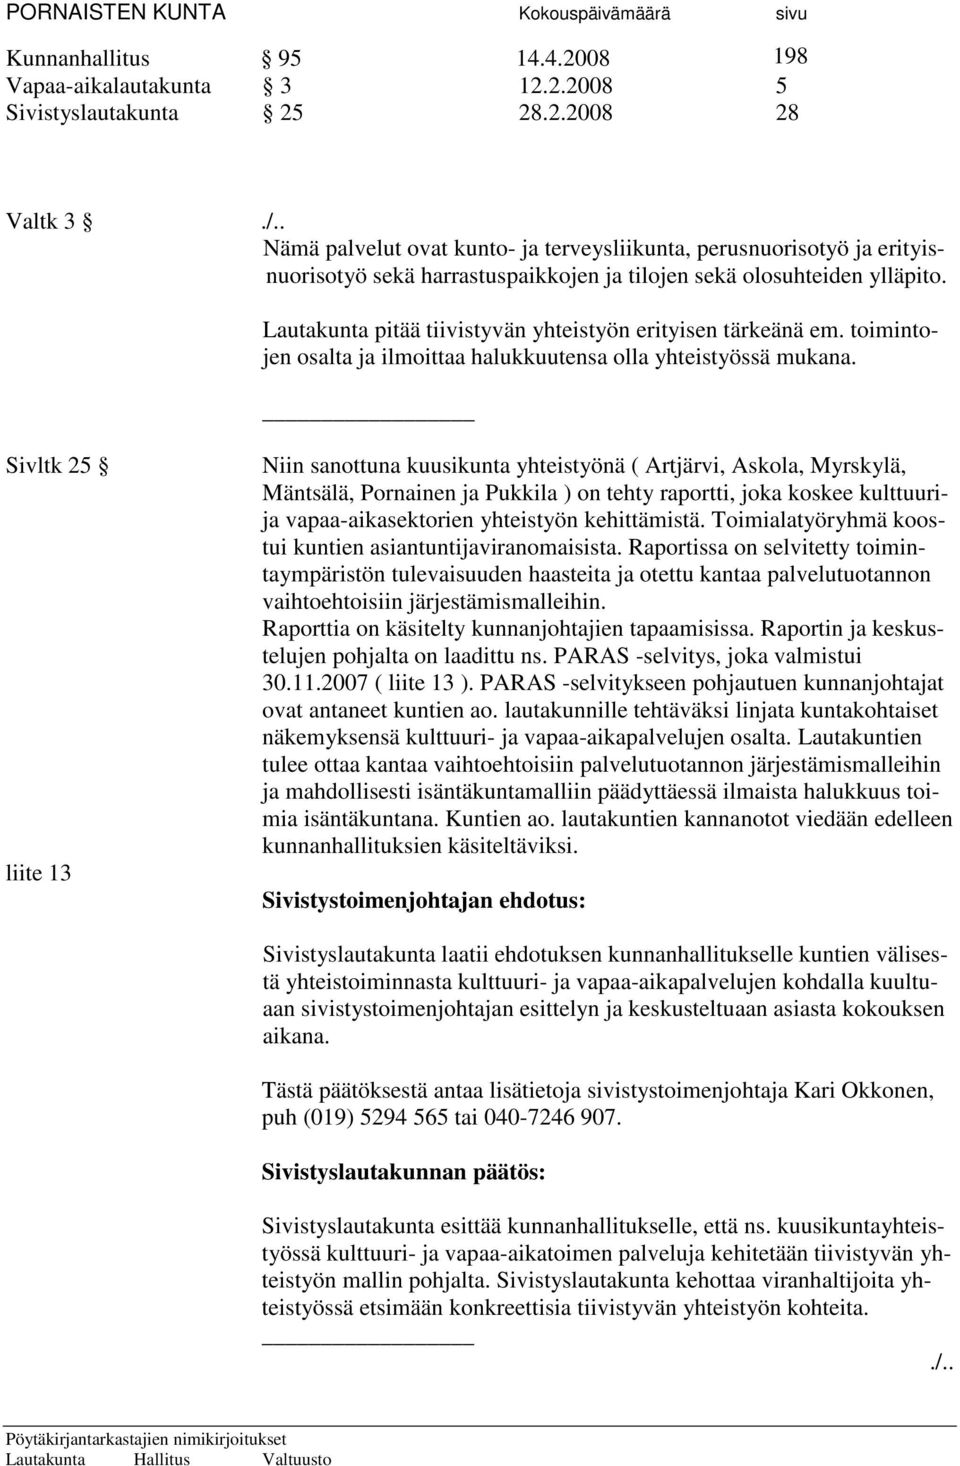 Sivltk 25 liite 13 Niin sanottuna kuusikunta yhteistyönä ( Artjärvi, Askola, Myrskylä, Mäntsälä, Pornainen ja Pukkila ) on tehty raportti, joka koskee kulttuurija vapaa-aikasektorien yhteistyön